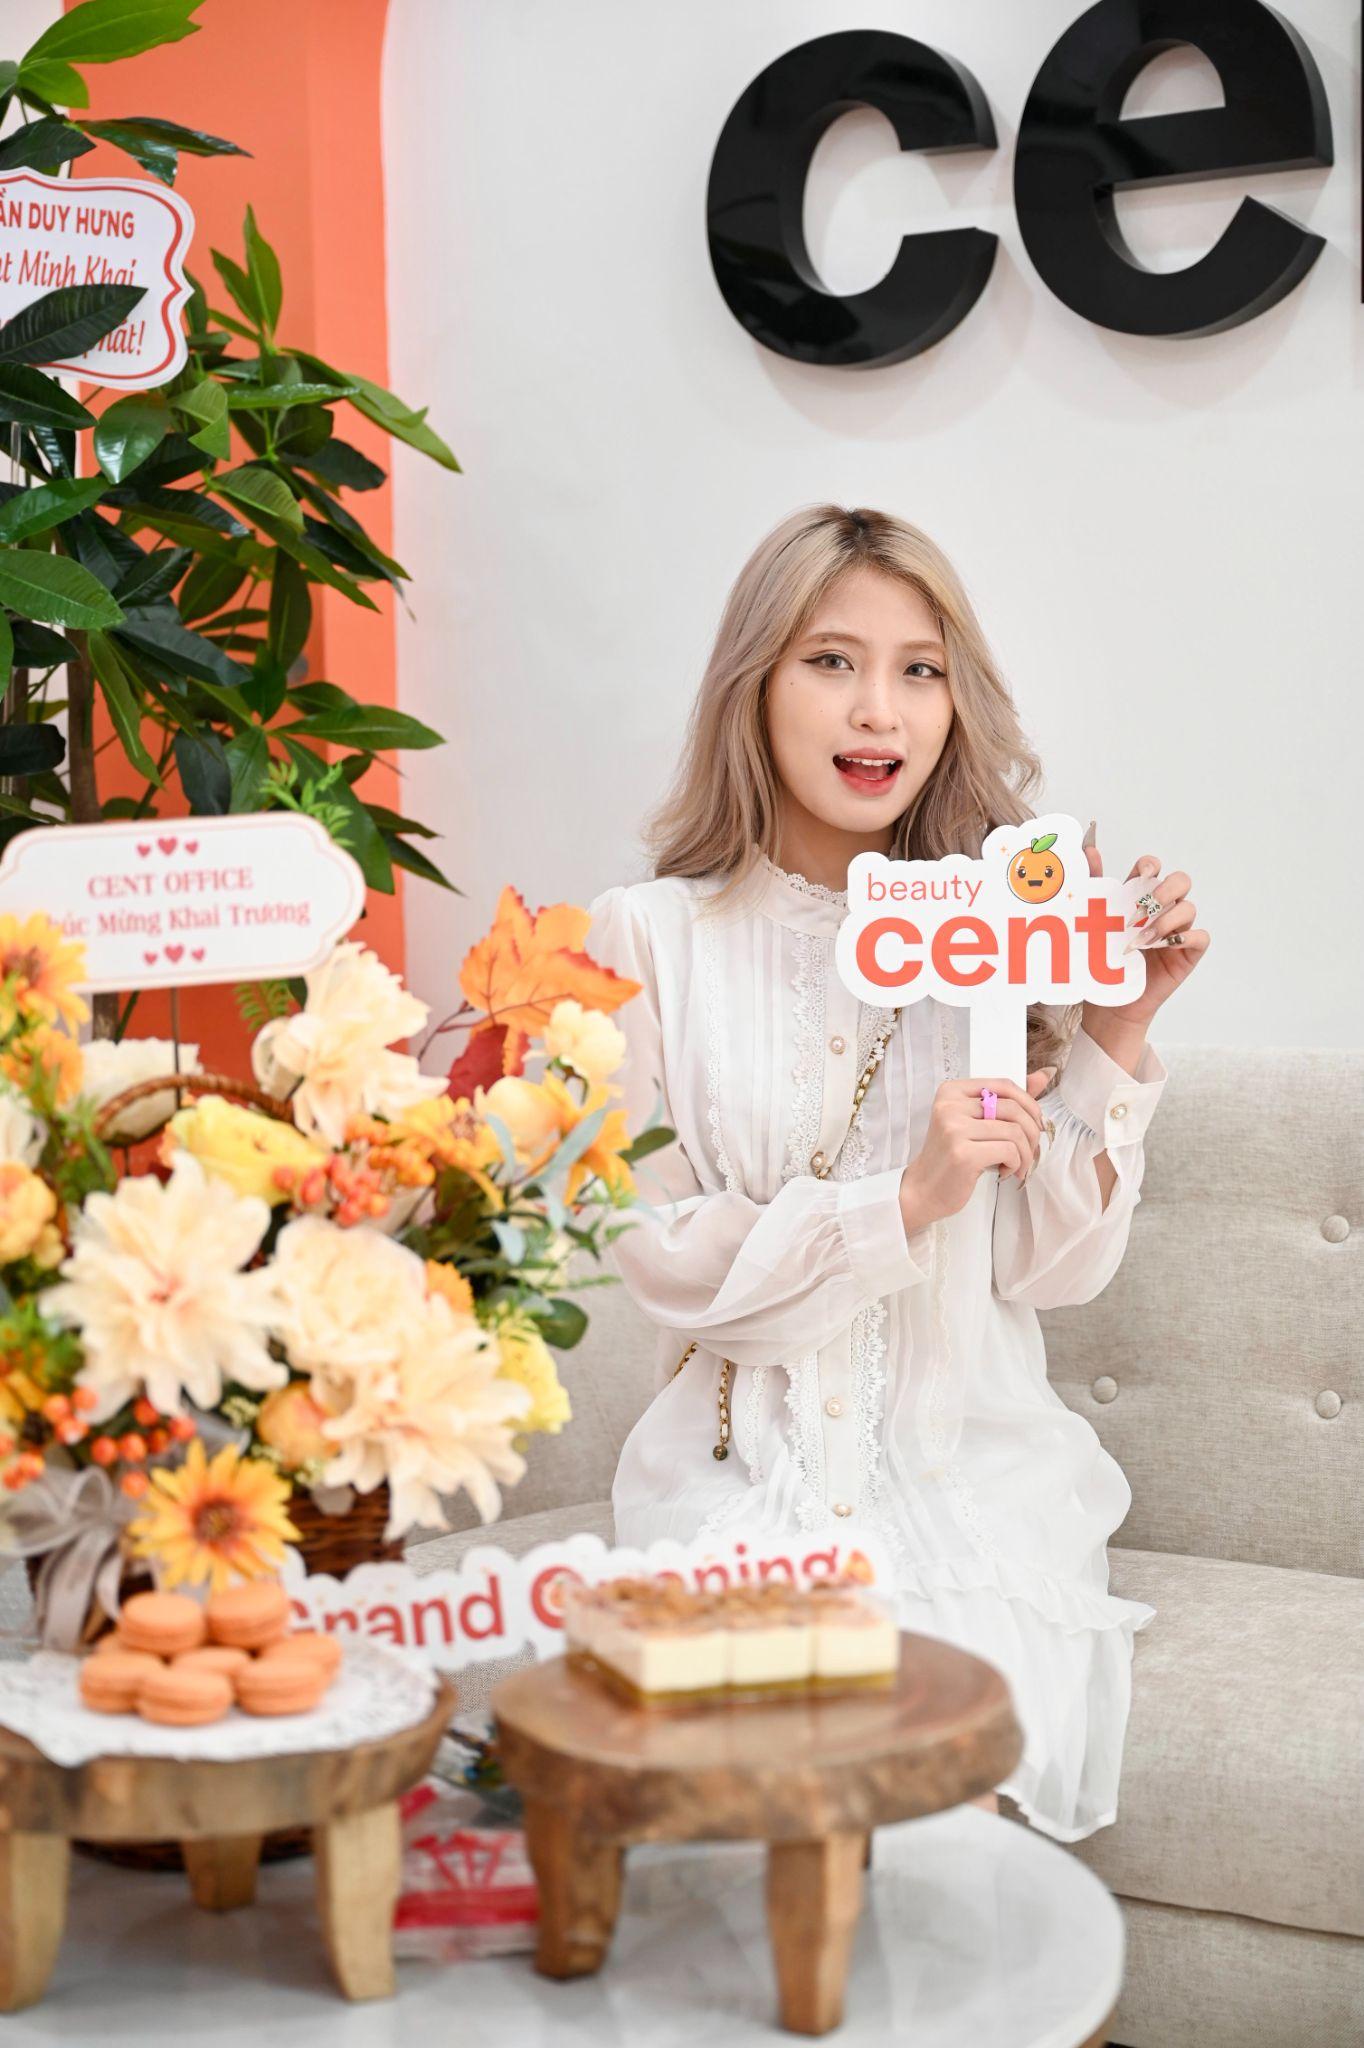 Cent Beauty khai trương cơ sở 5: Sự kiện mở đầu của kế hoạch tăng tốc mở rộng - Ảnh 3.